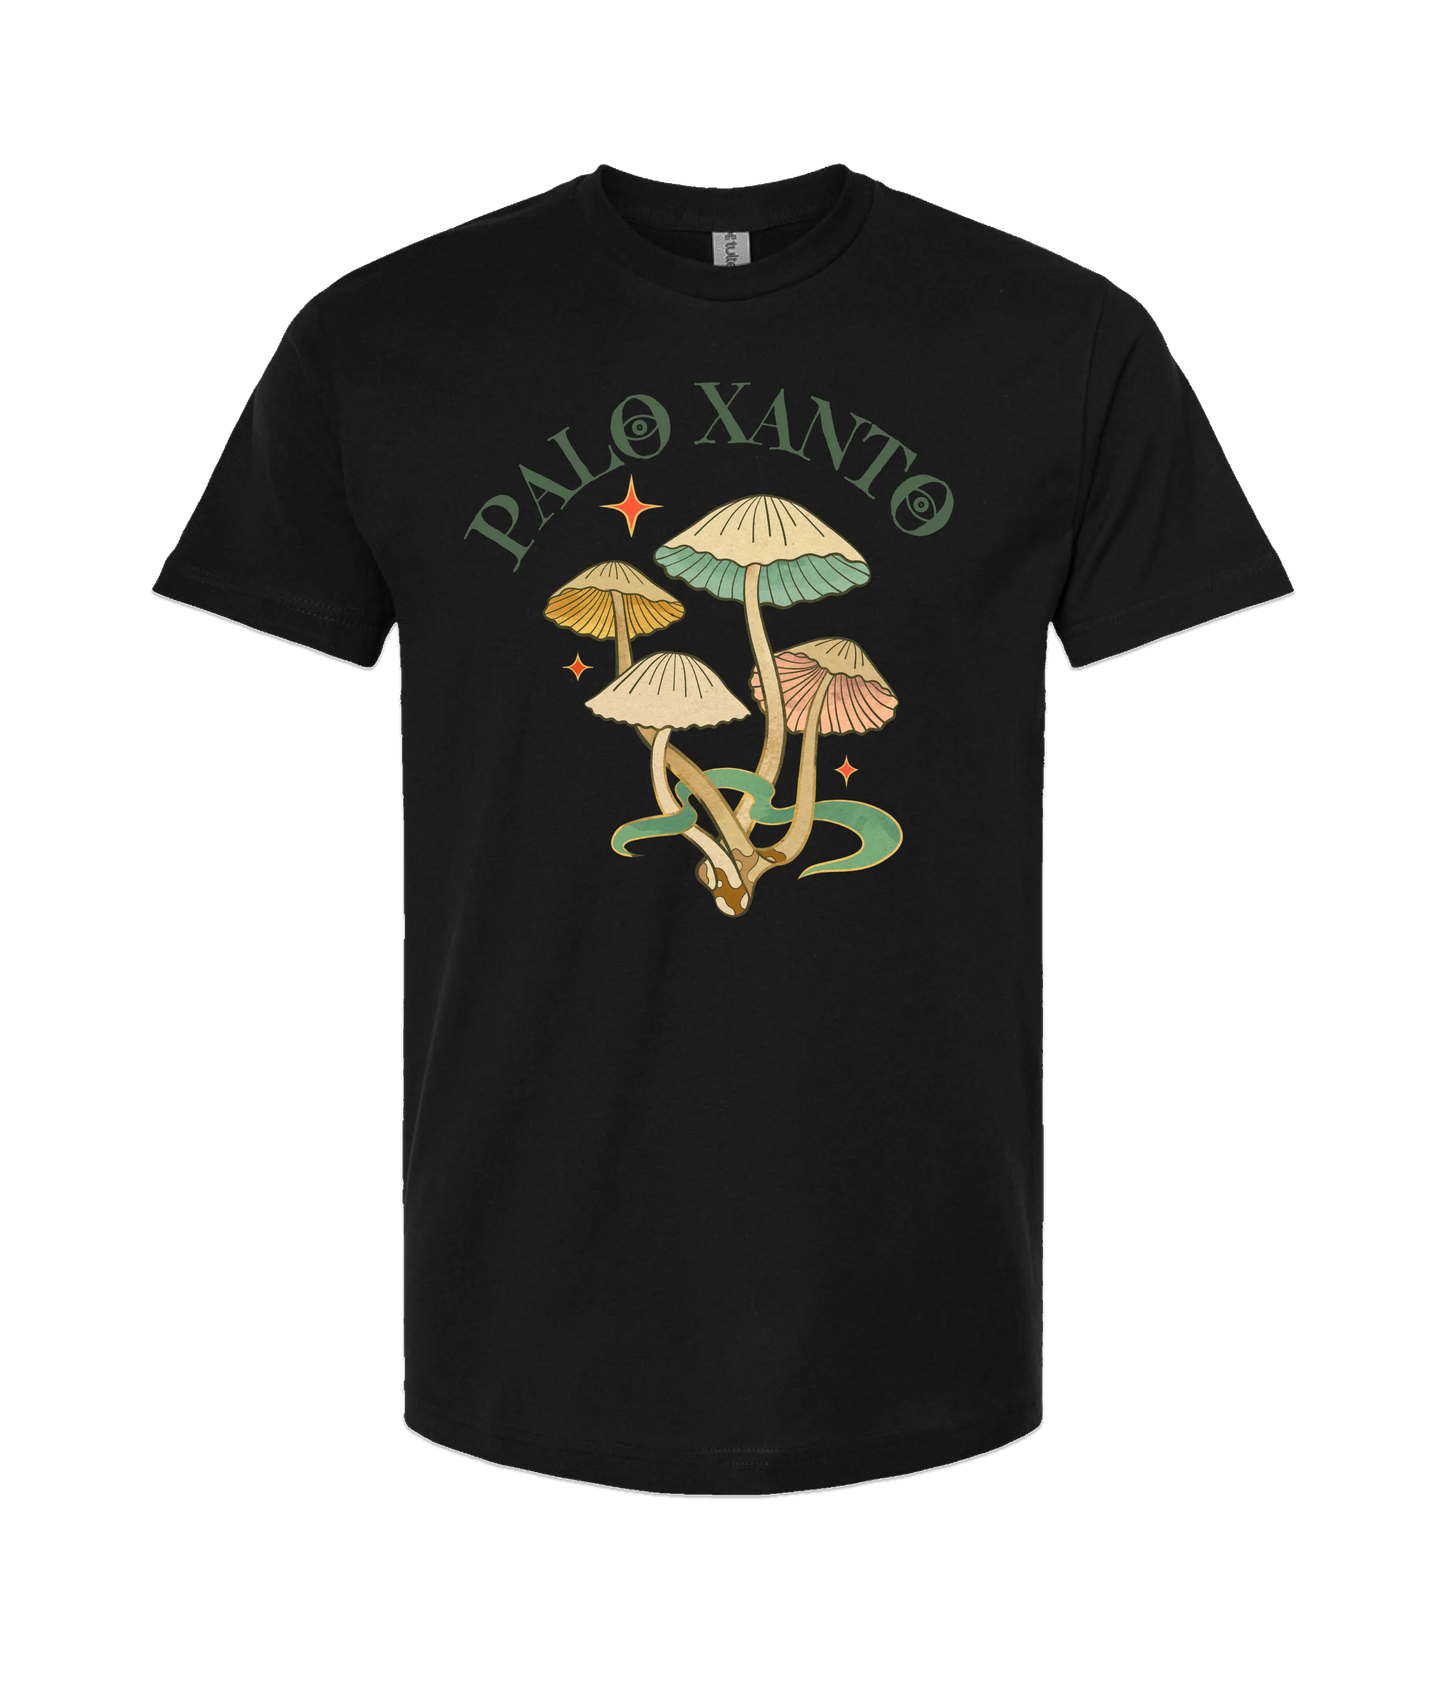 Palo Xanto - Mushroom - Black T-Shirt